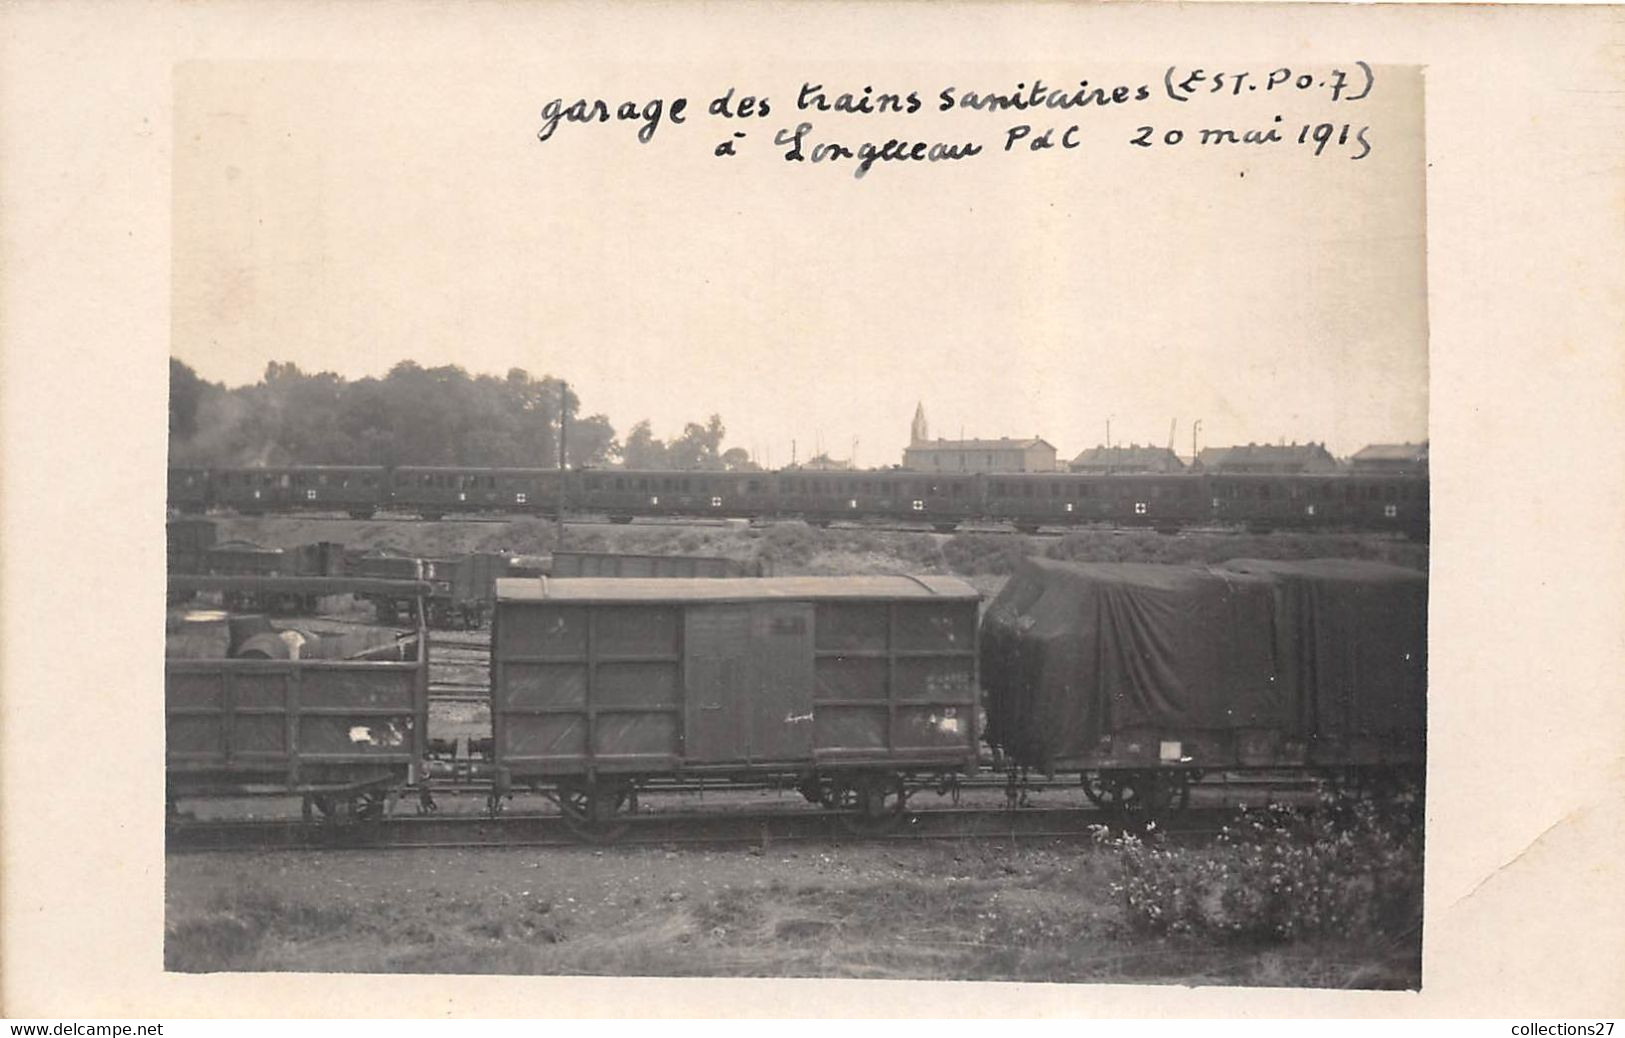 80-LONGUEAU- CARTE-PHOTO MILITAIRE GARAGE DES TRAINS SANITAIRES ( EST P-O 7 ) 20 MAI 1915 - Longueau